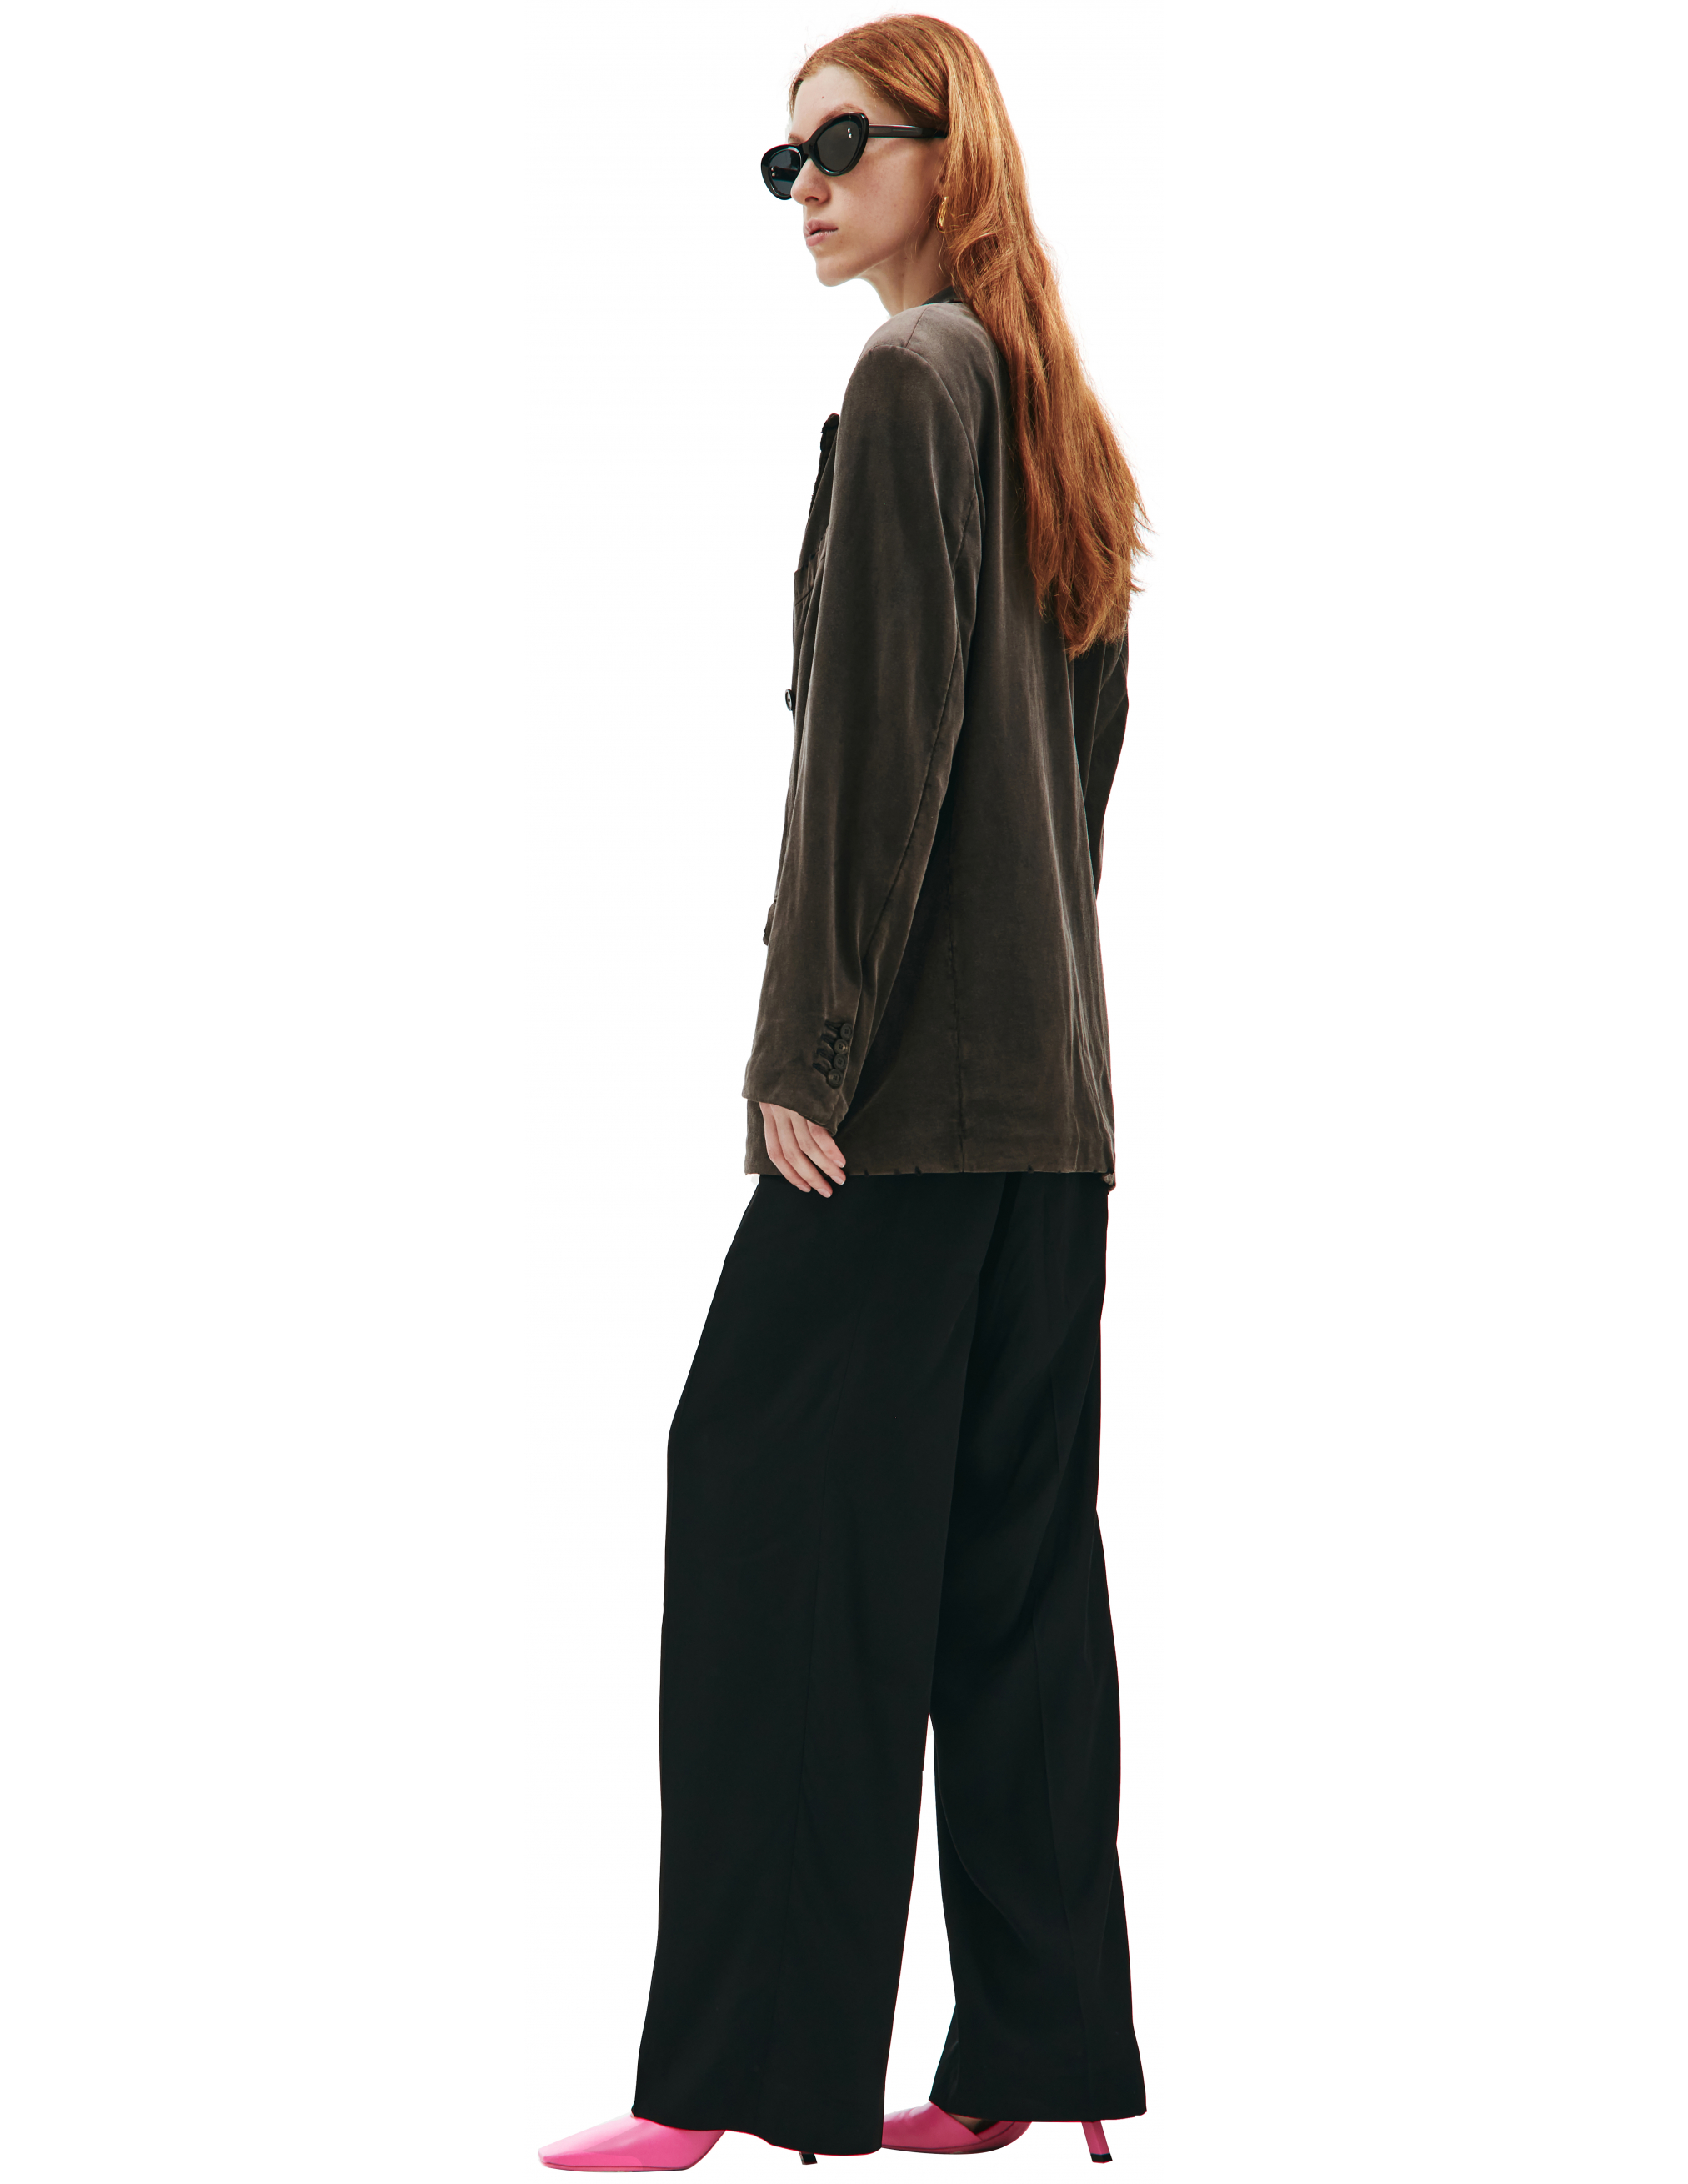 Двубортный пиджак с выстиранным эффектом Balenciaga 662390/TAV04/1000, размер M 662390/TAV04/1000 - фото 2